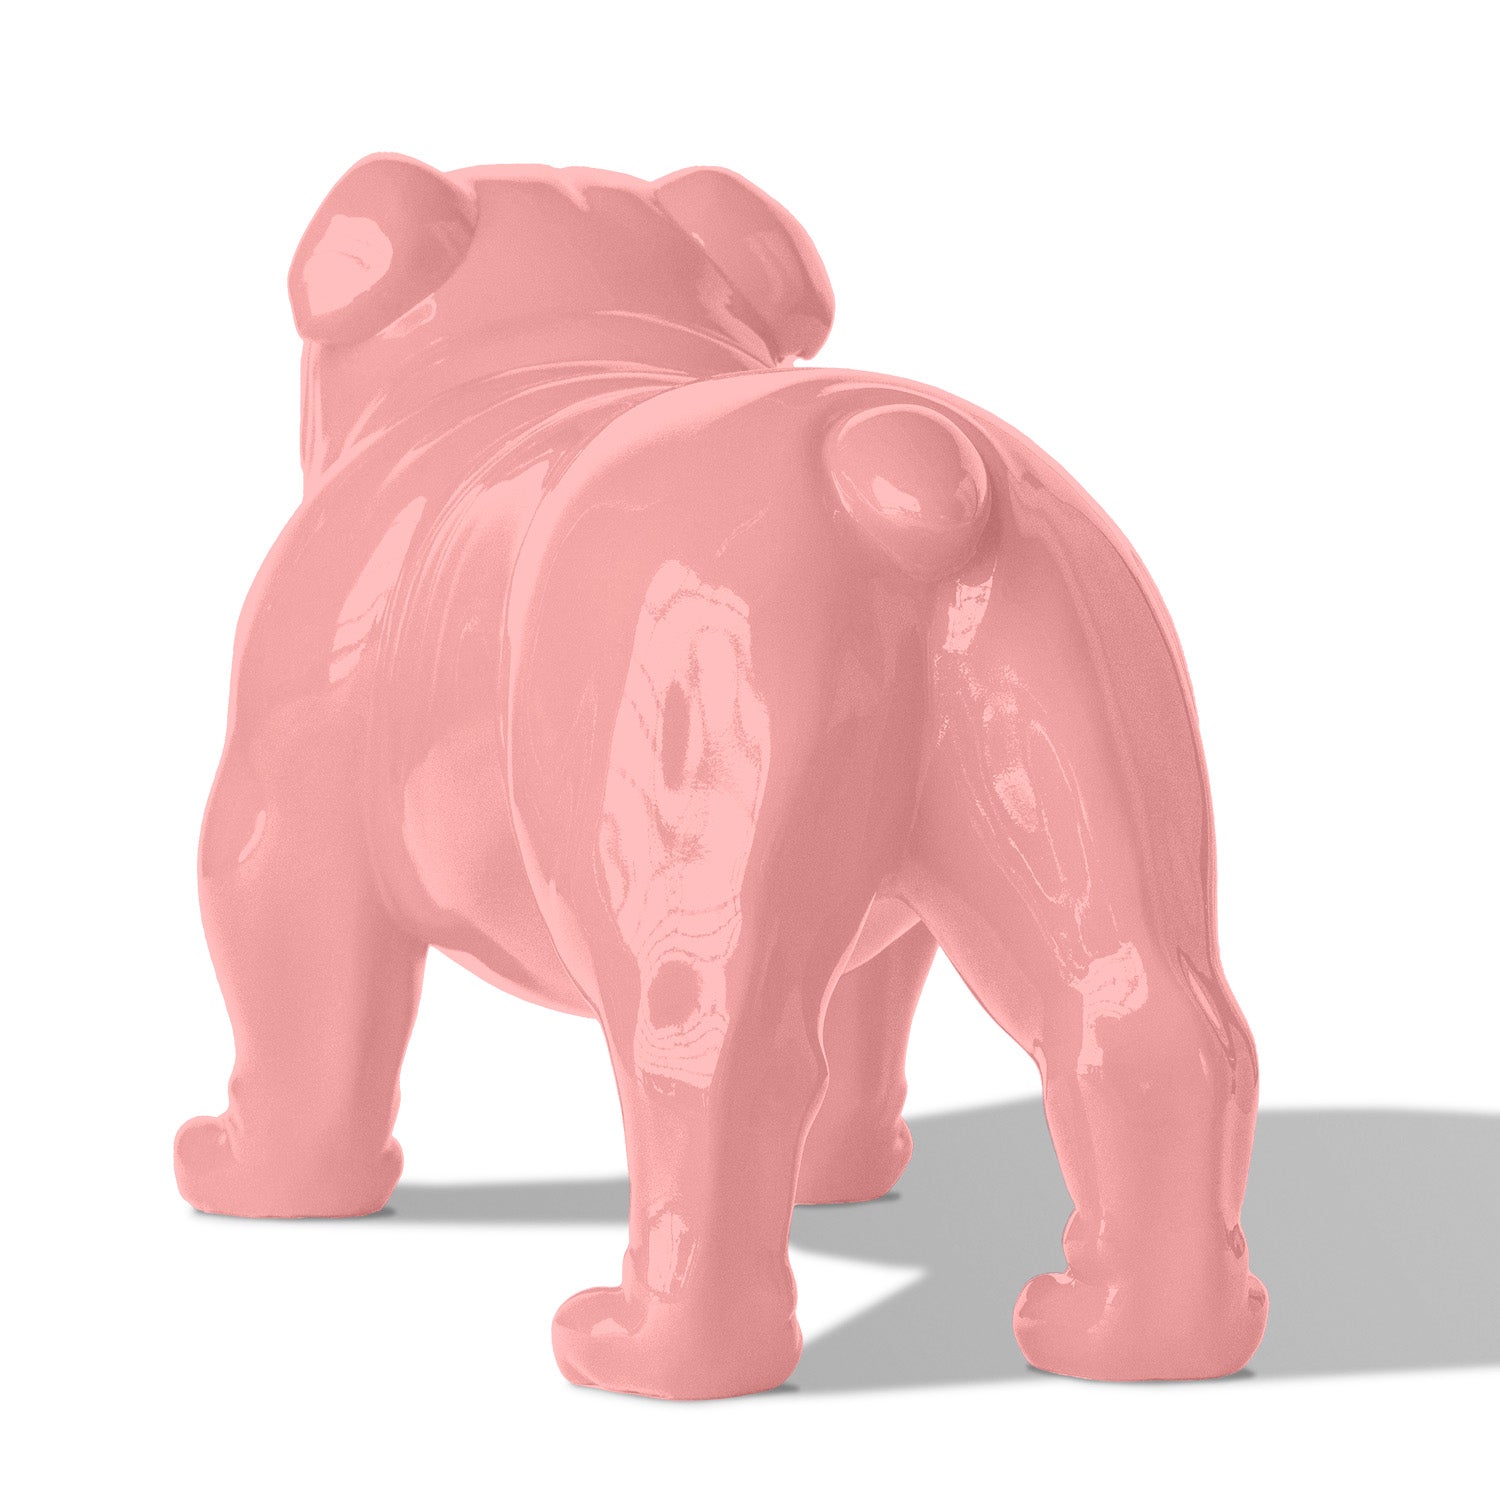 Bulldog Sculpture, Light Pink, MD